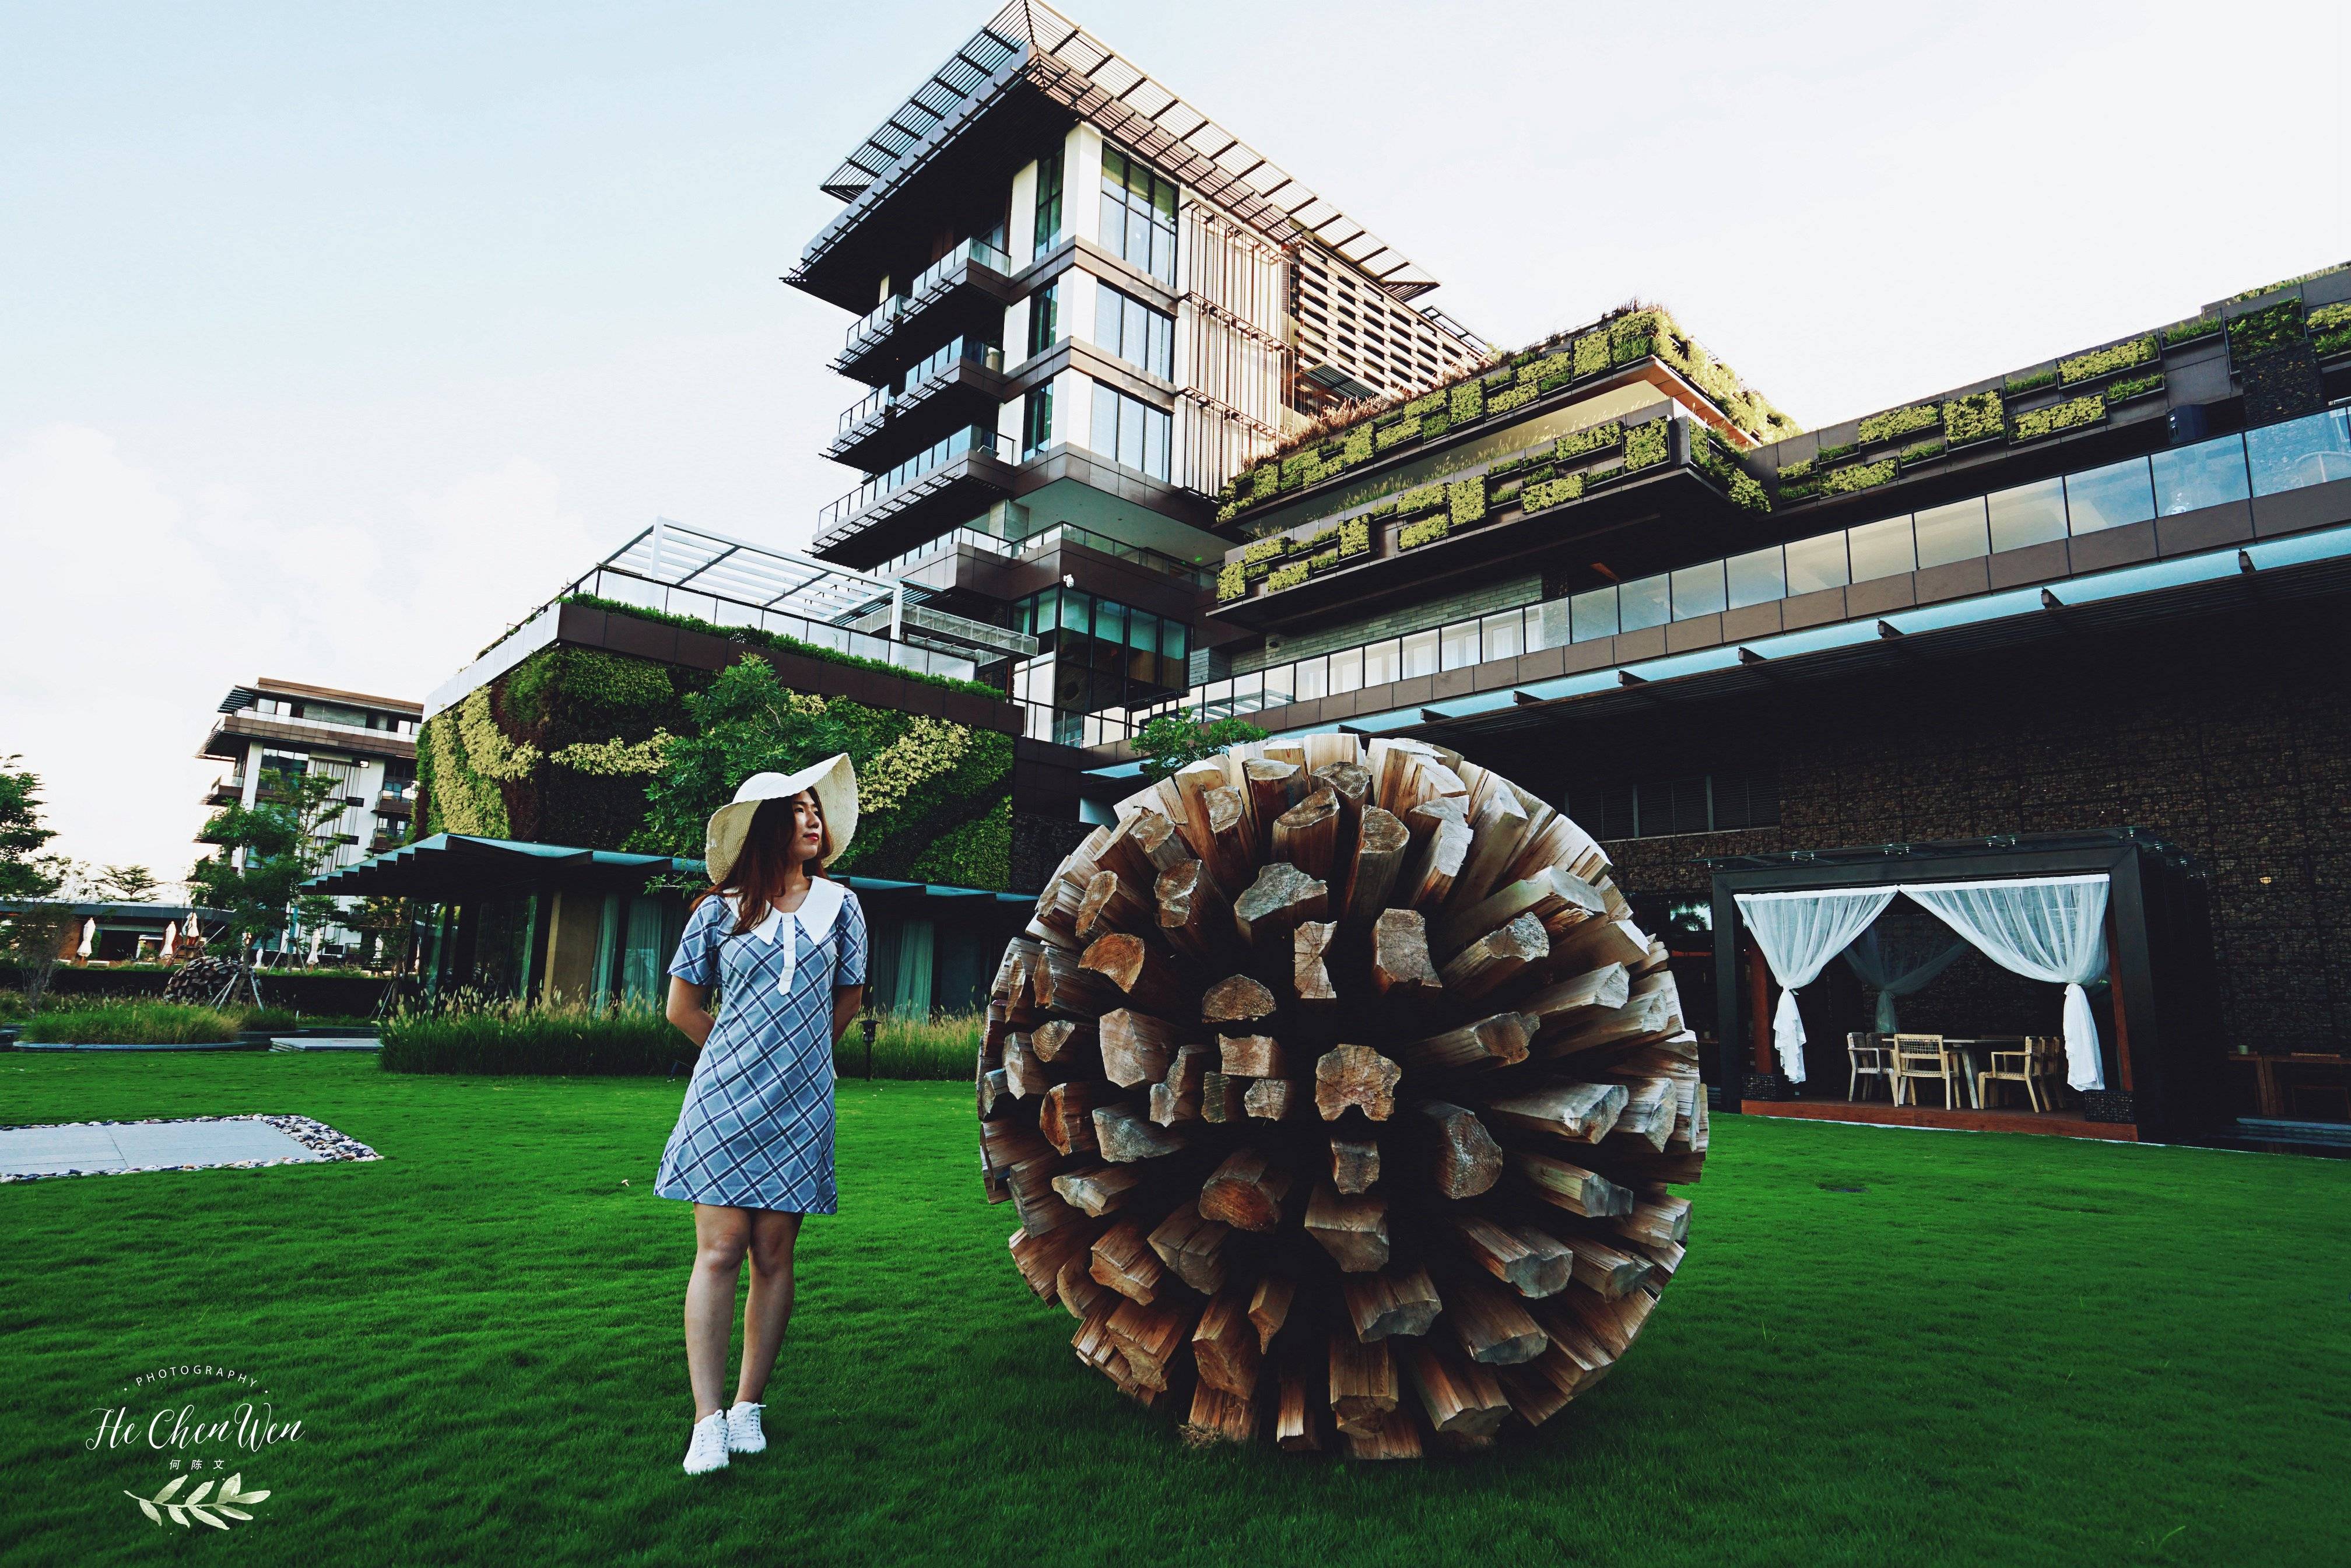 亚太首家生态奢华酒店,主打自然环保理念,感觉像住进森林里